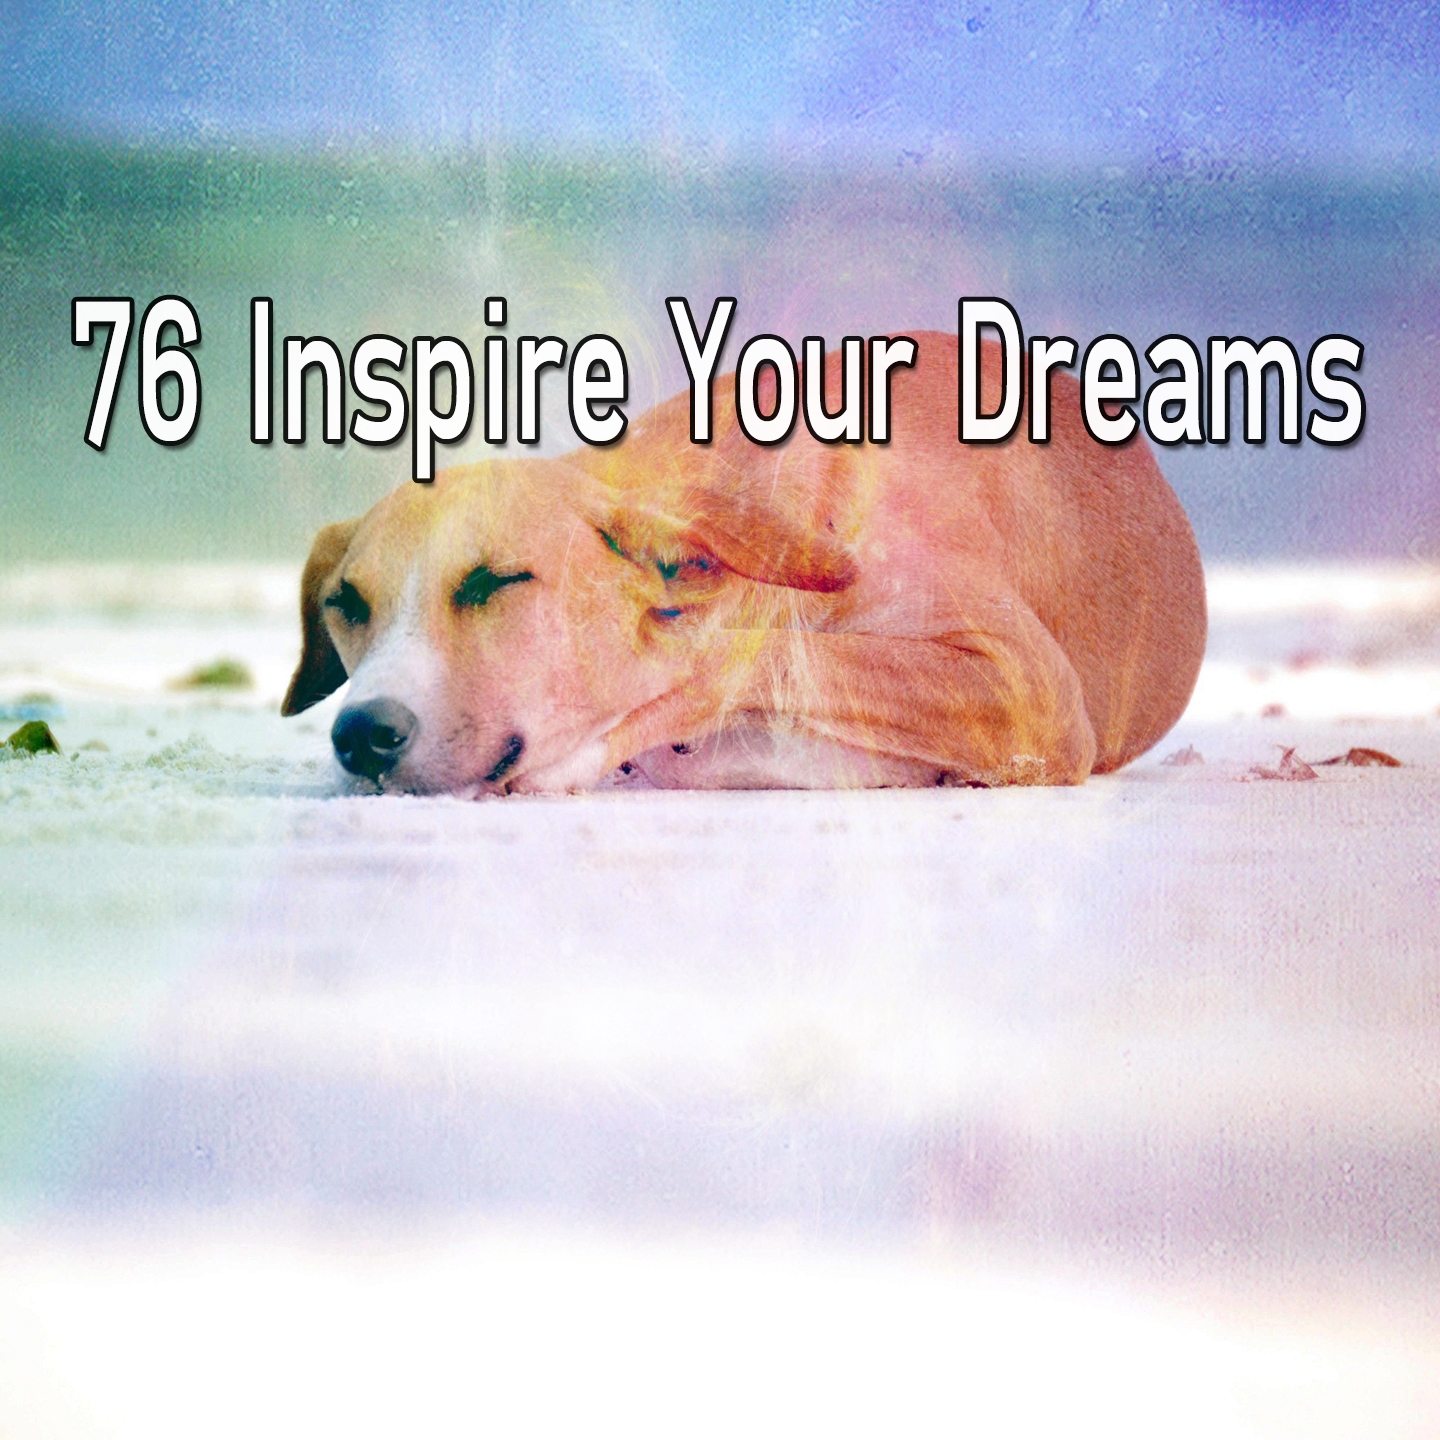 76 Inspire Your Dreams